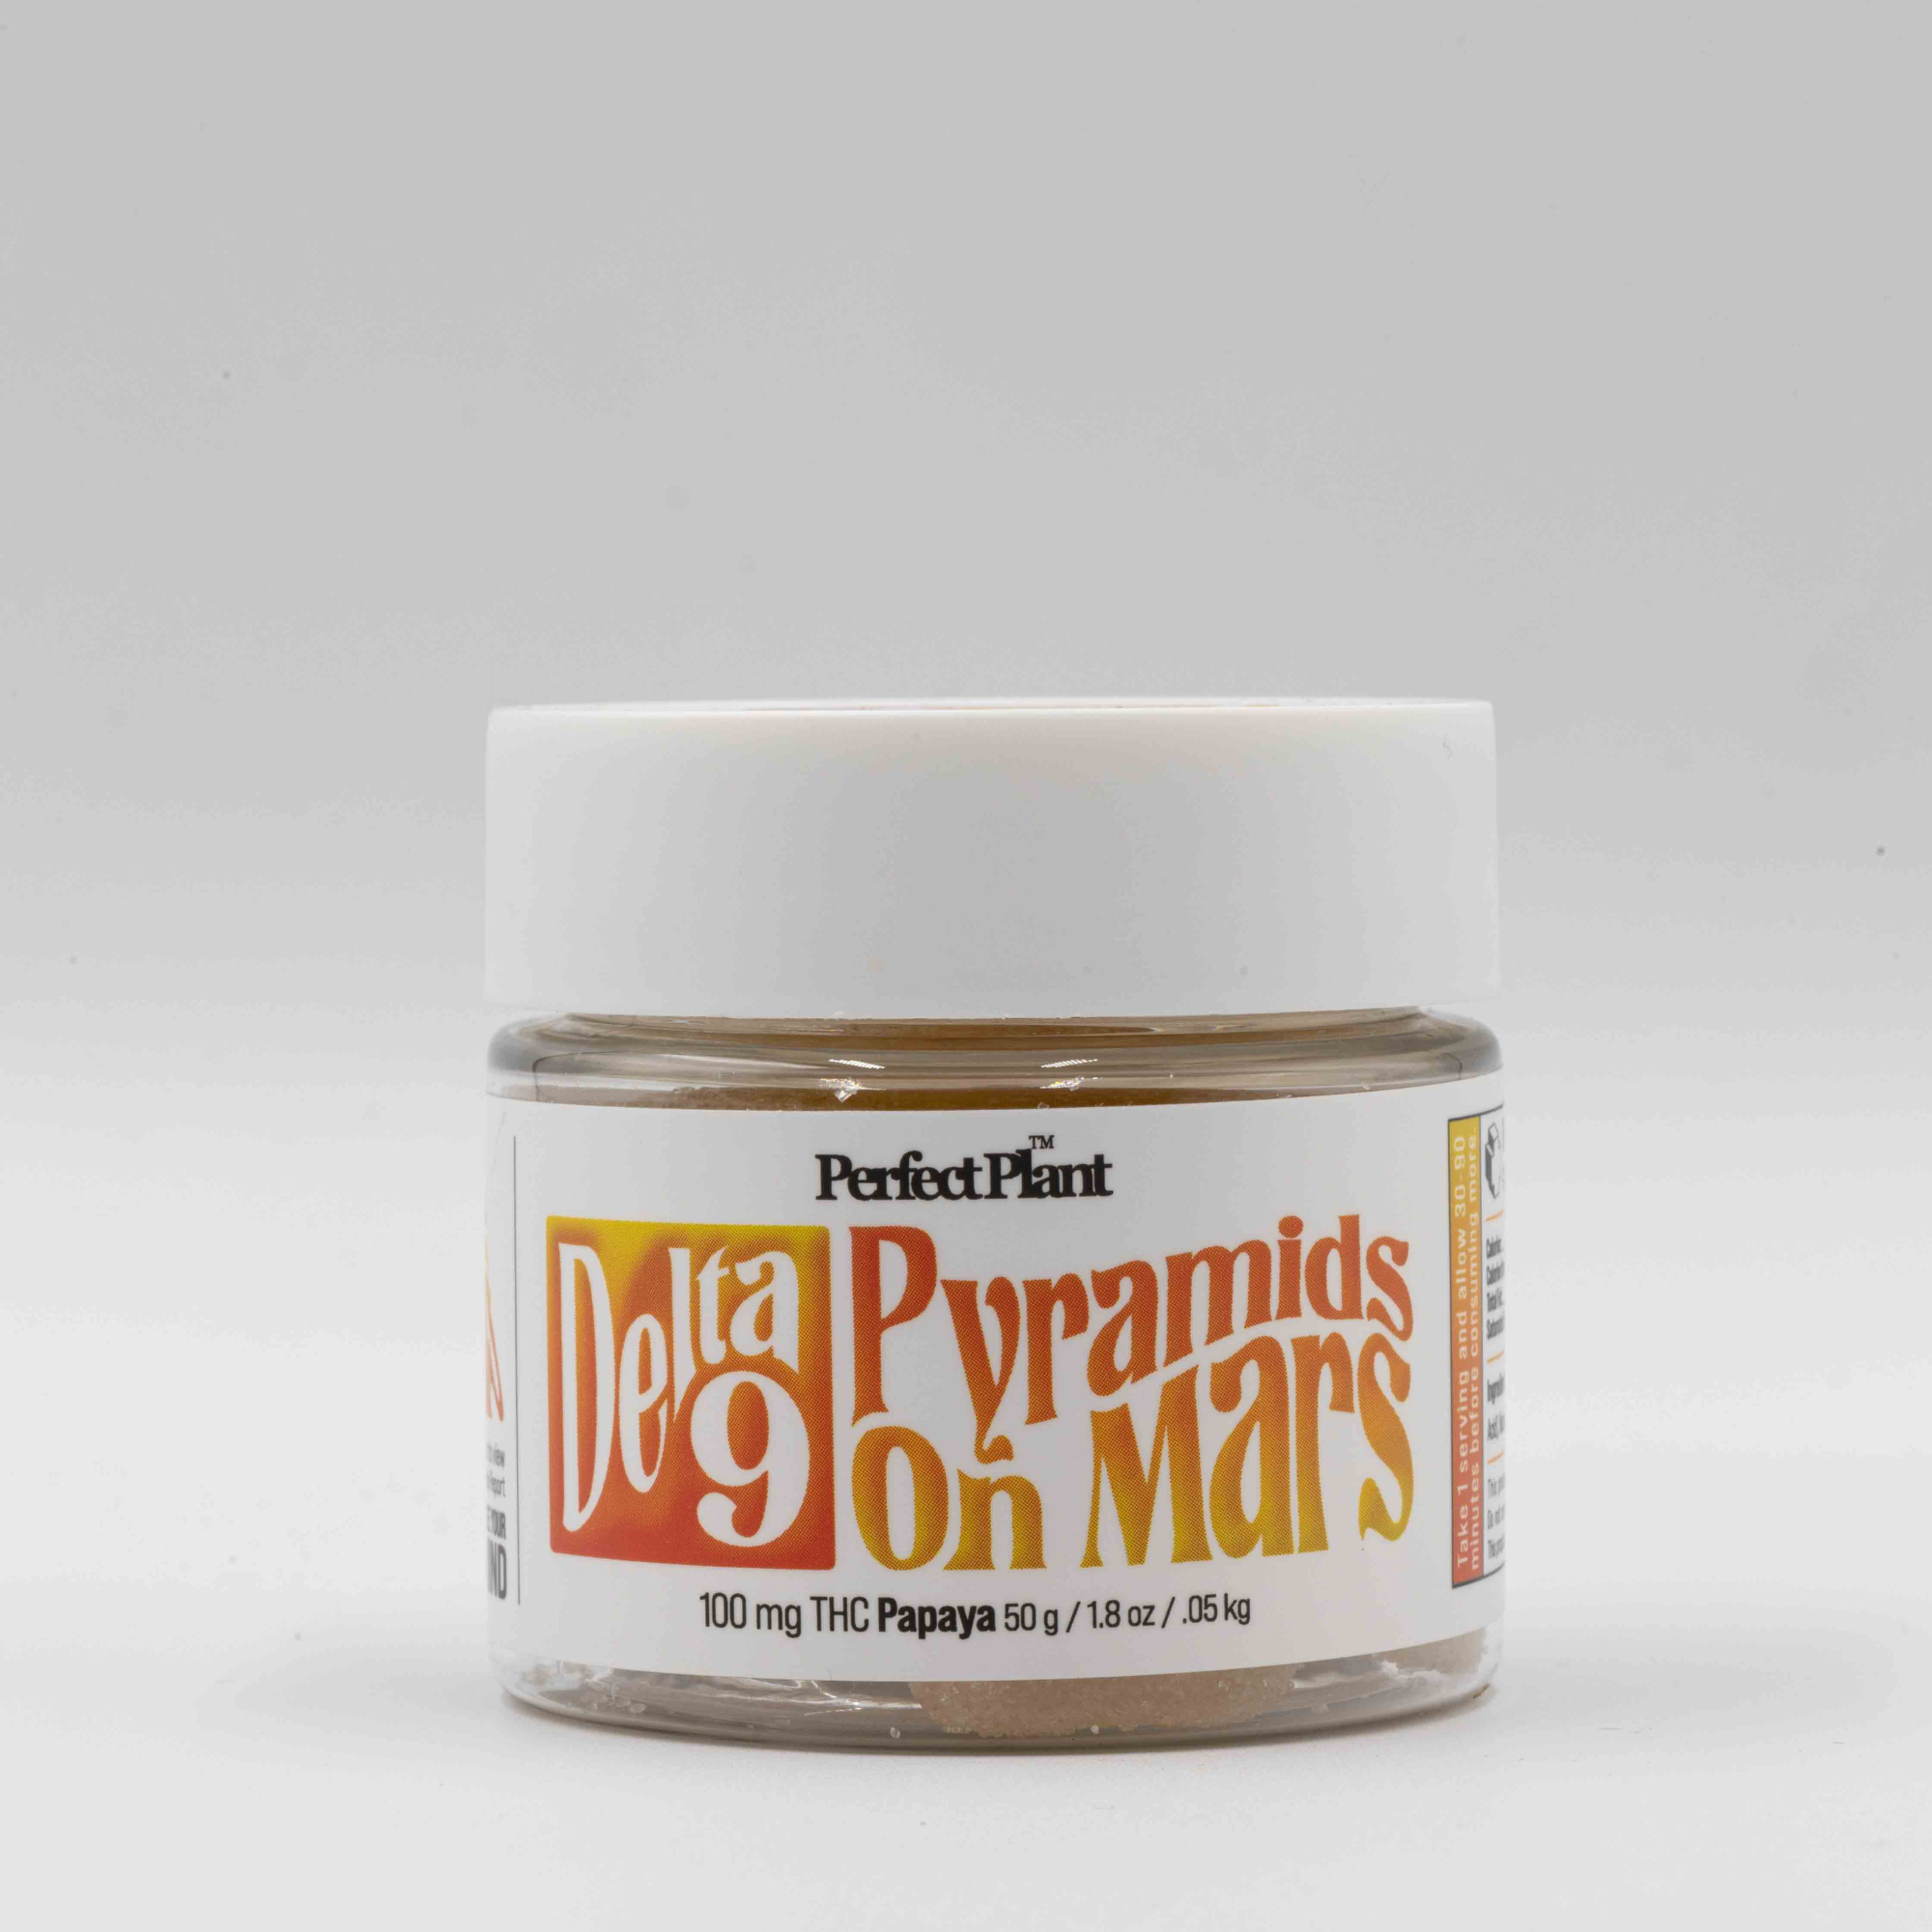 Papaya - Pyramids On Mars (Delta-9)